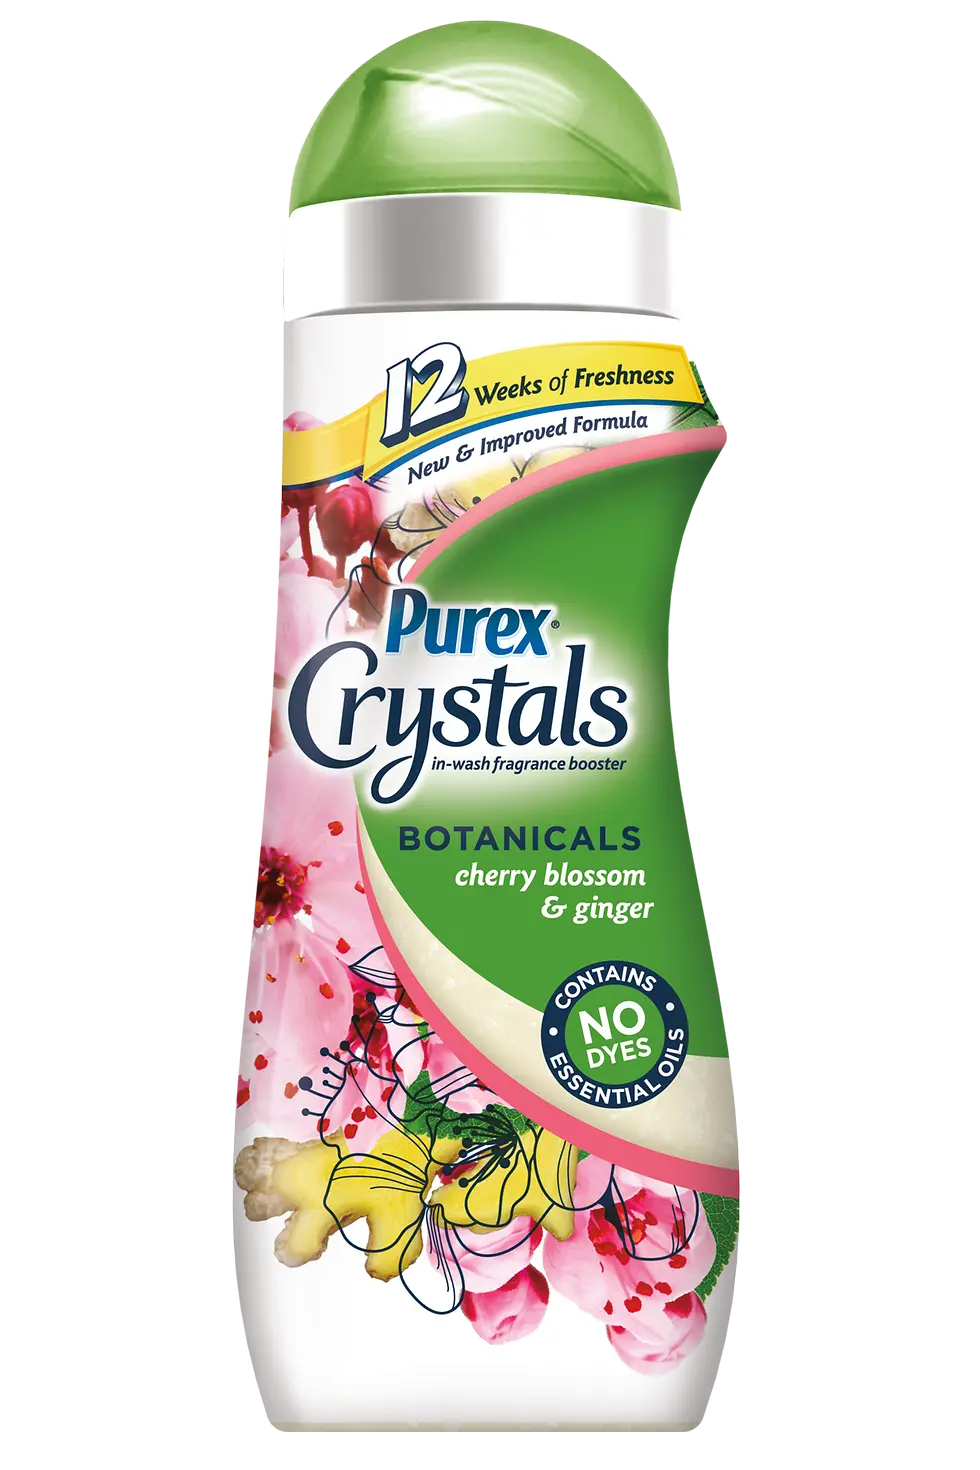 Purex Crystals Botanicals